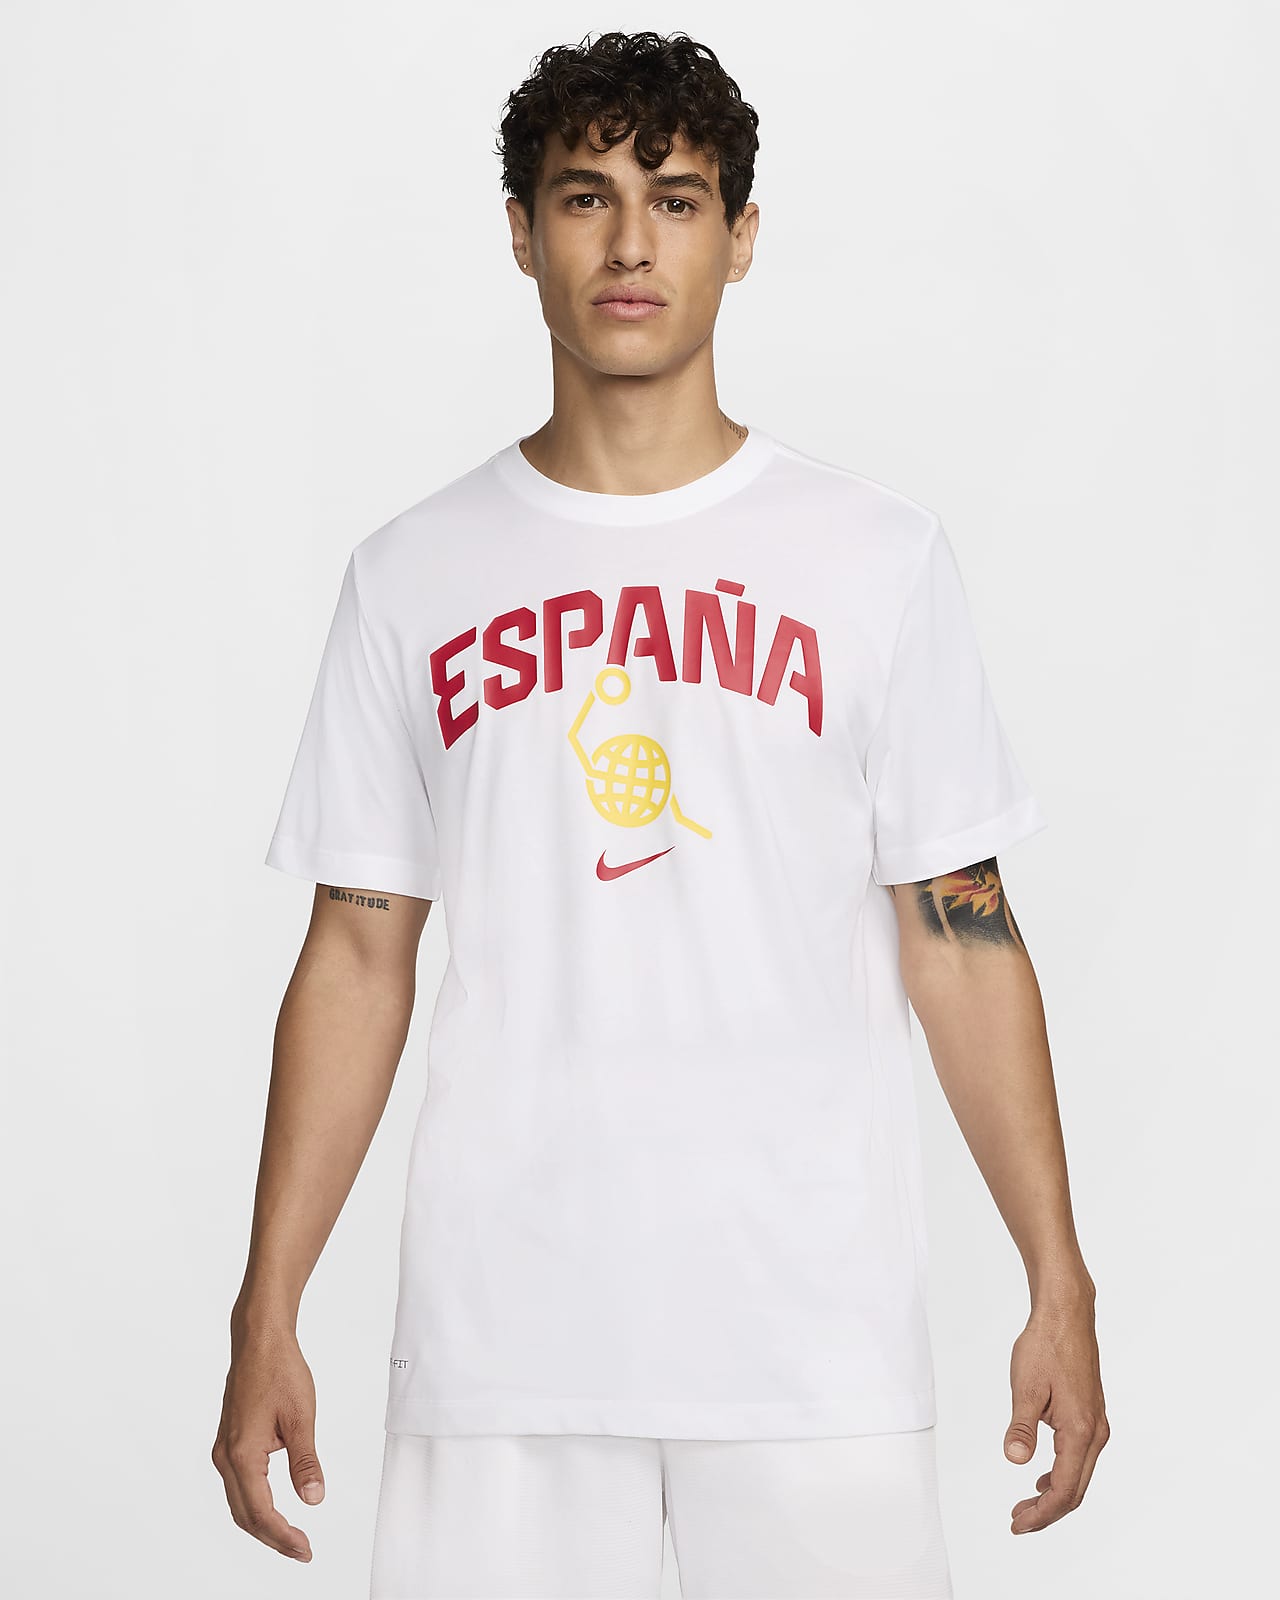 Spain Men's Nike Basketball T-Shirt